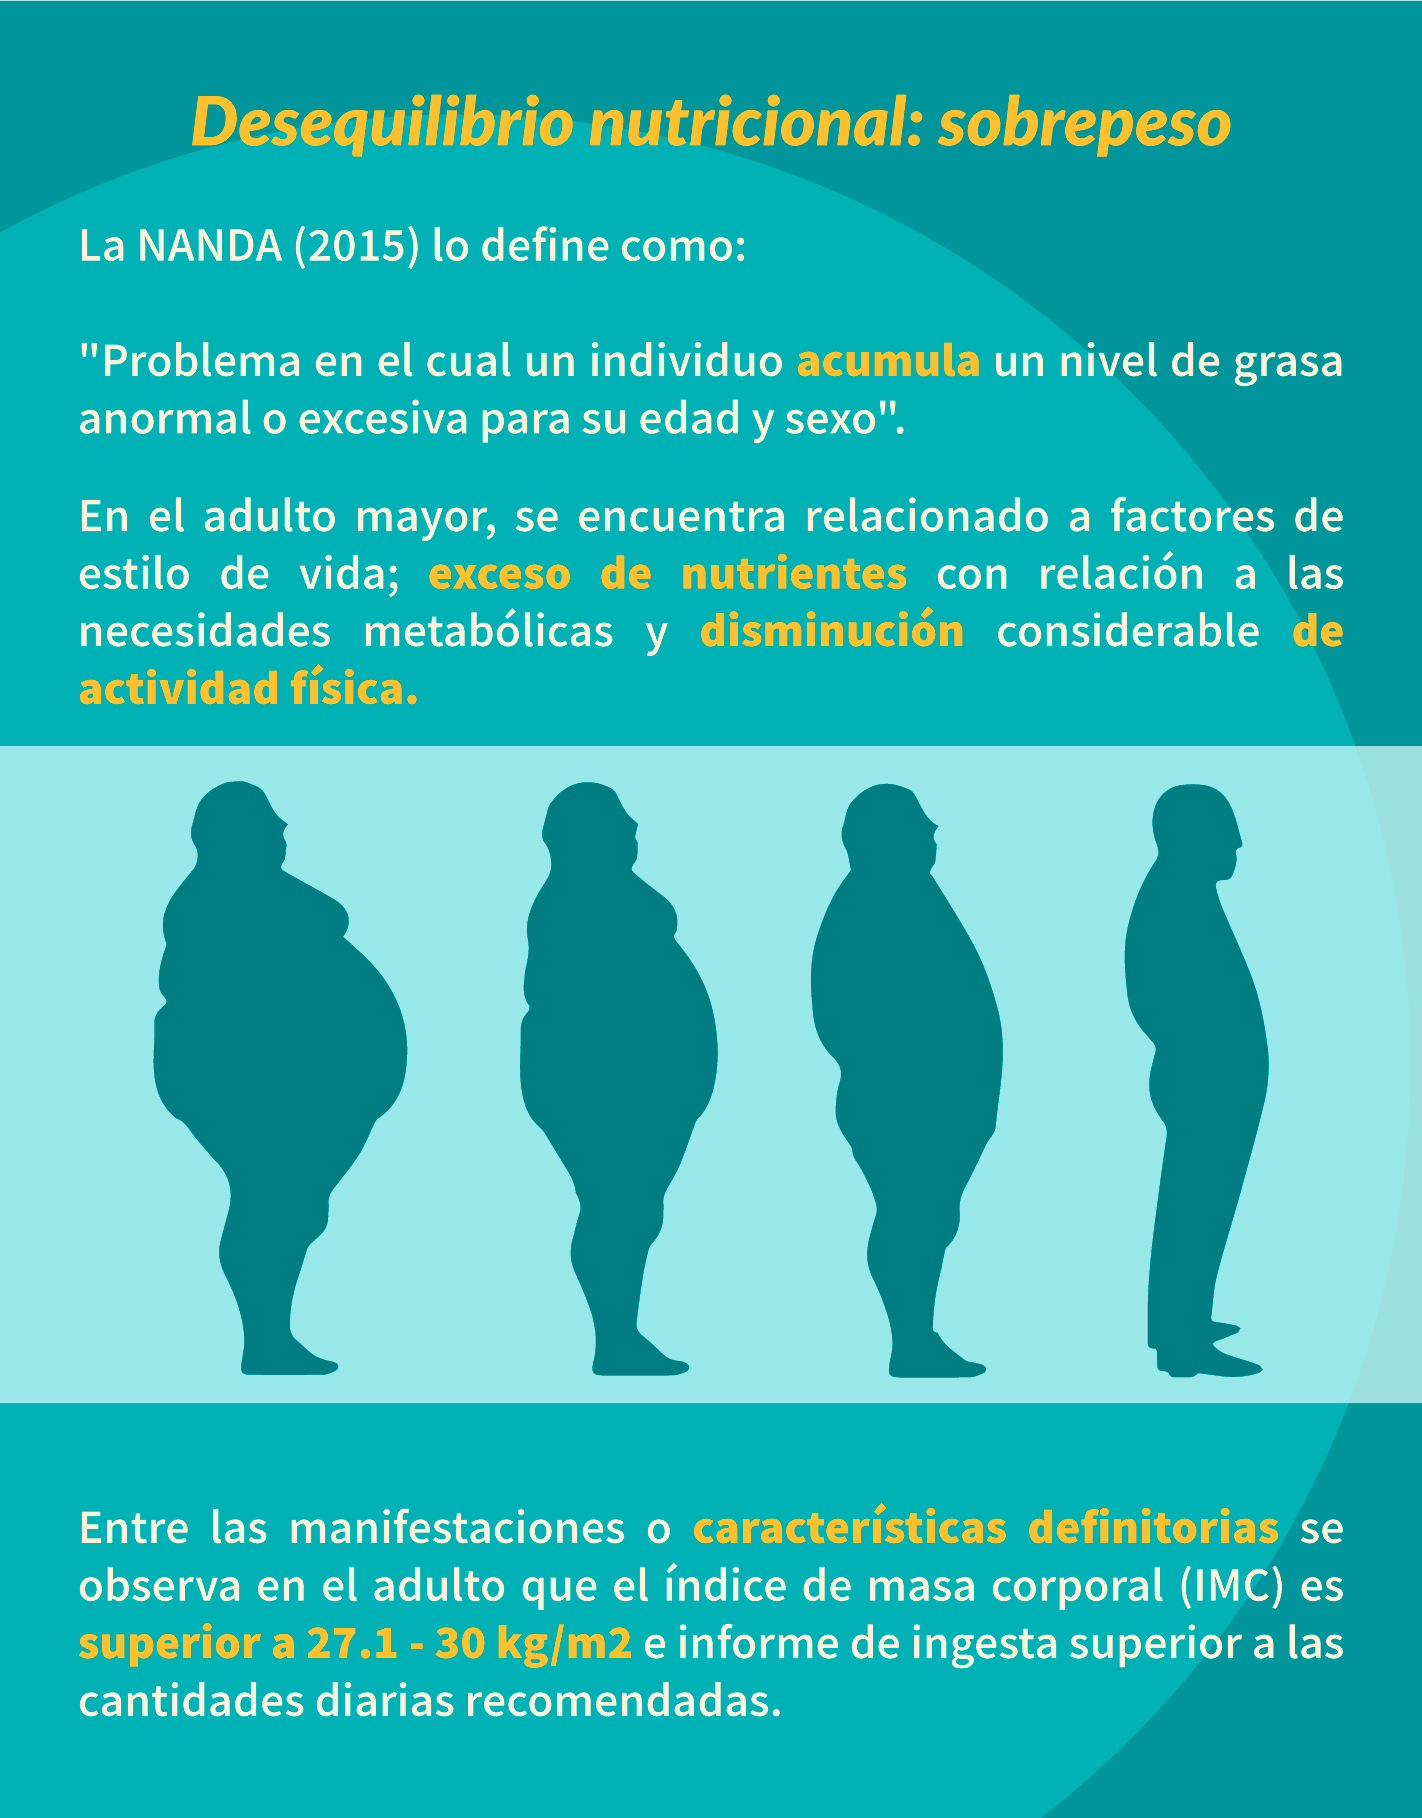 Desequilibrio nutricional -sobrepeso-